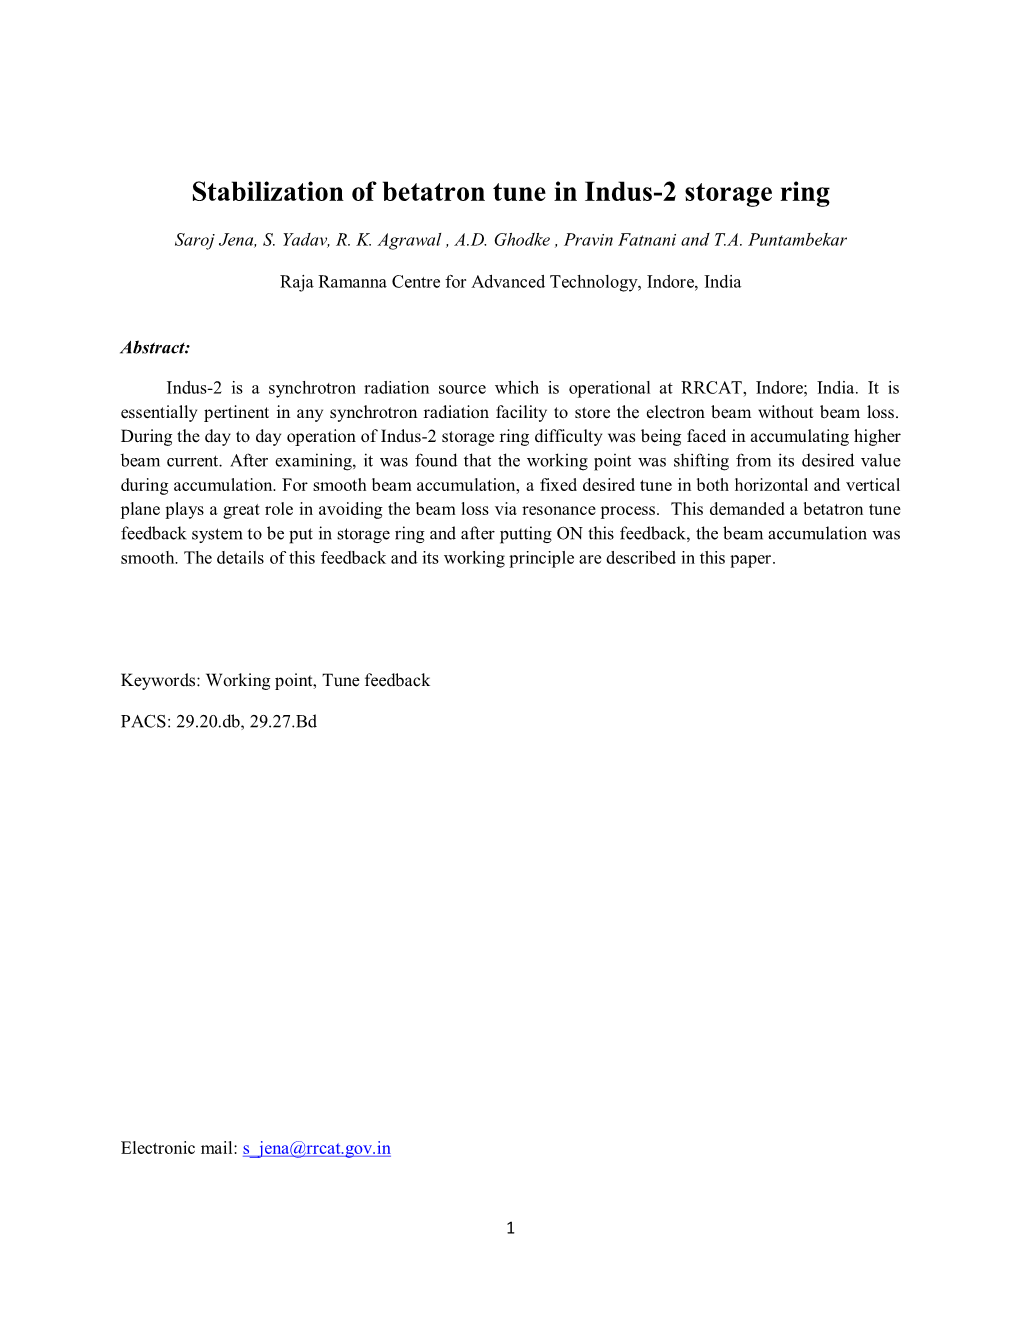 Stabilization of Betatron Tune in Indus-2 Storage Ring